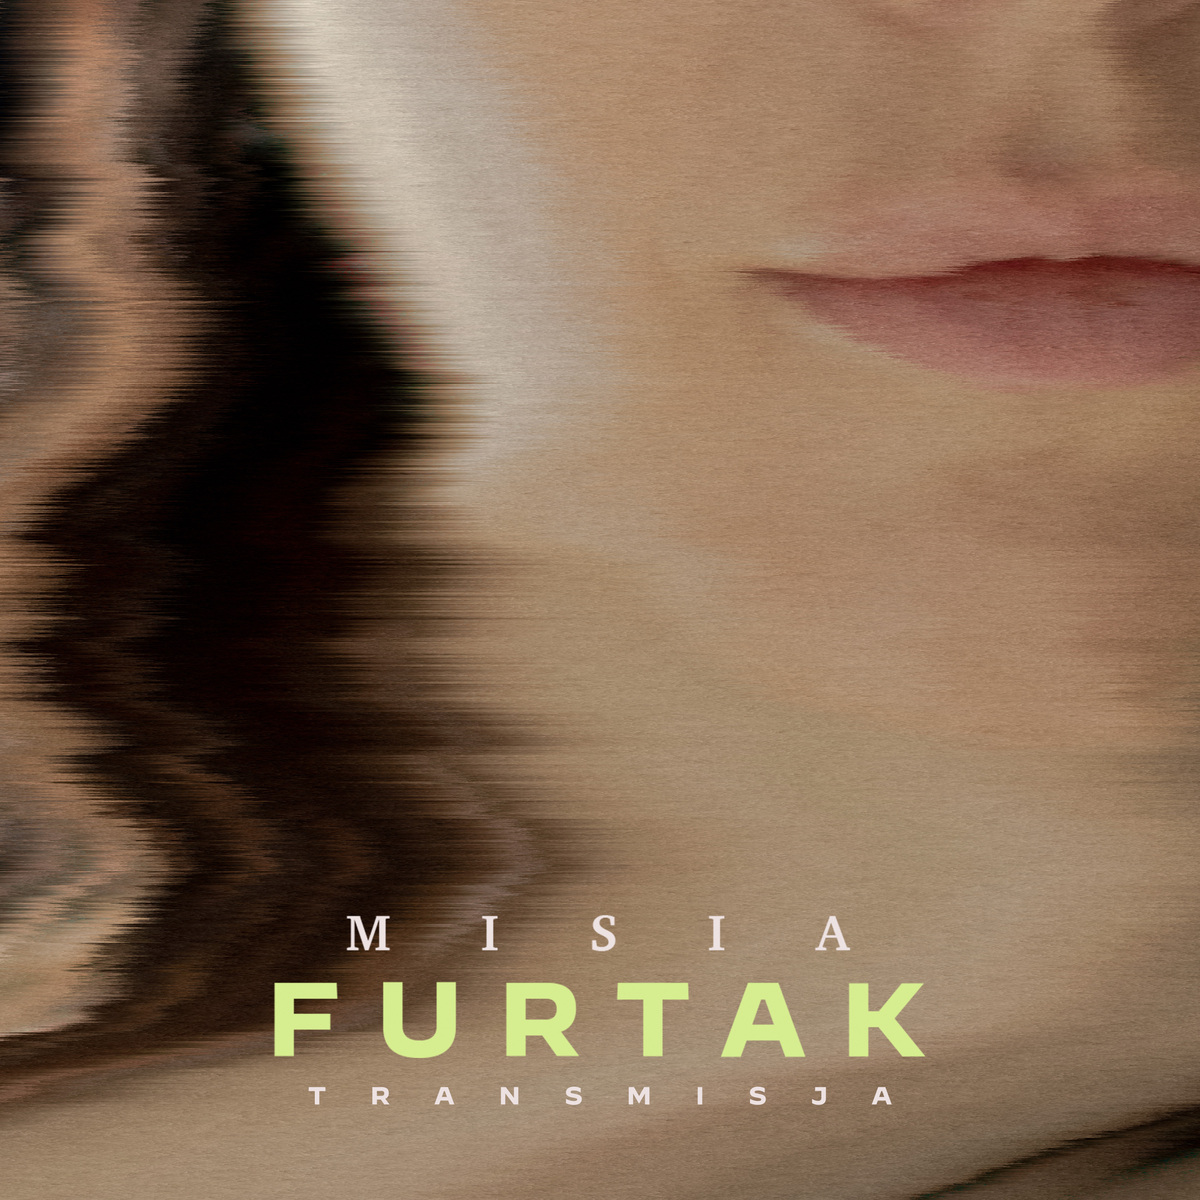 MISIA FURTAK „Transmisja": Drugi singiel z albumu zainspirowanego protestami kobiet